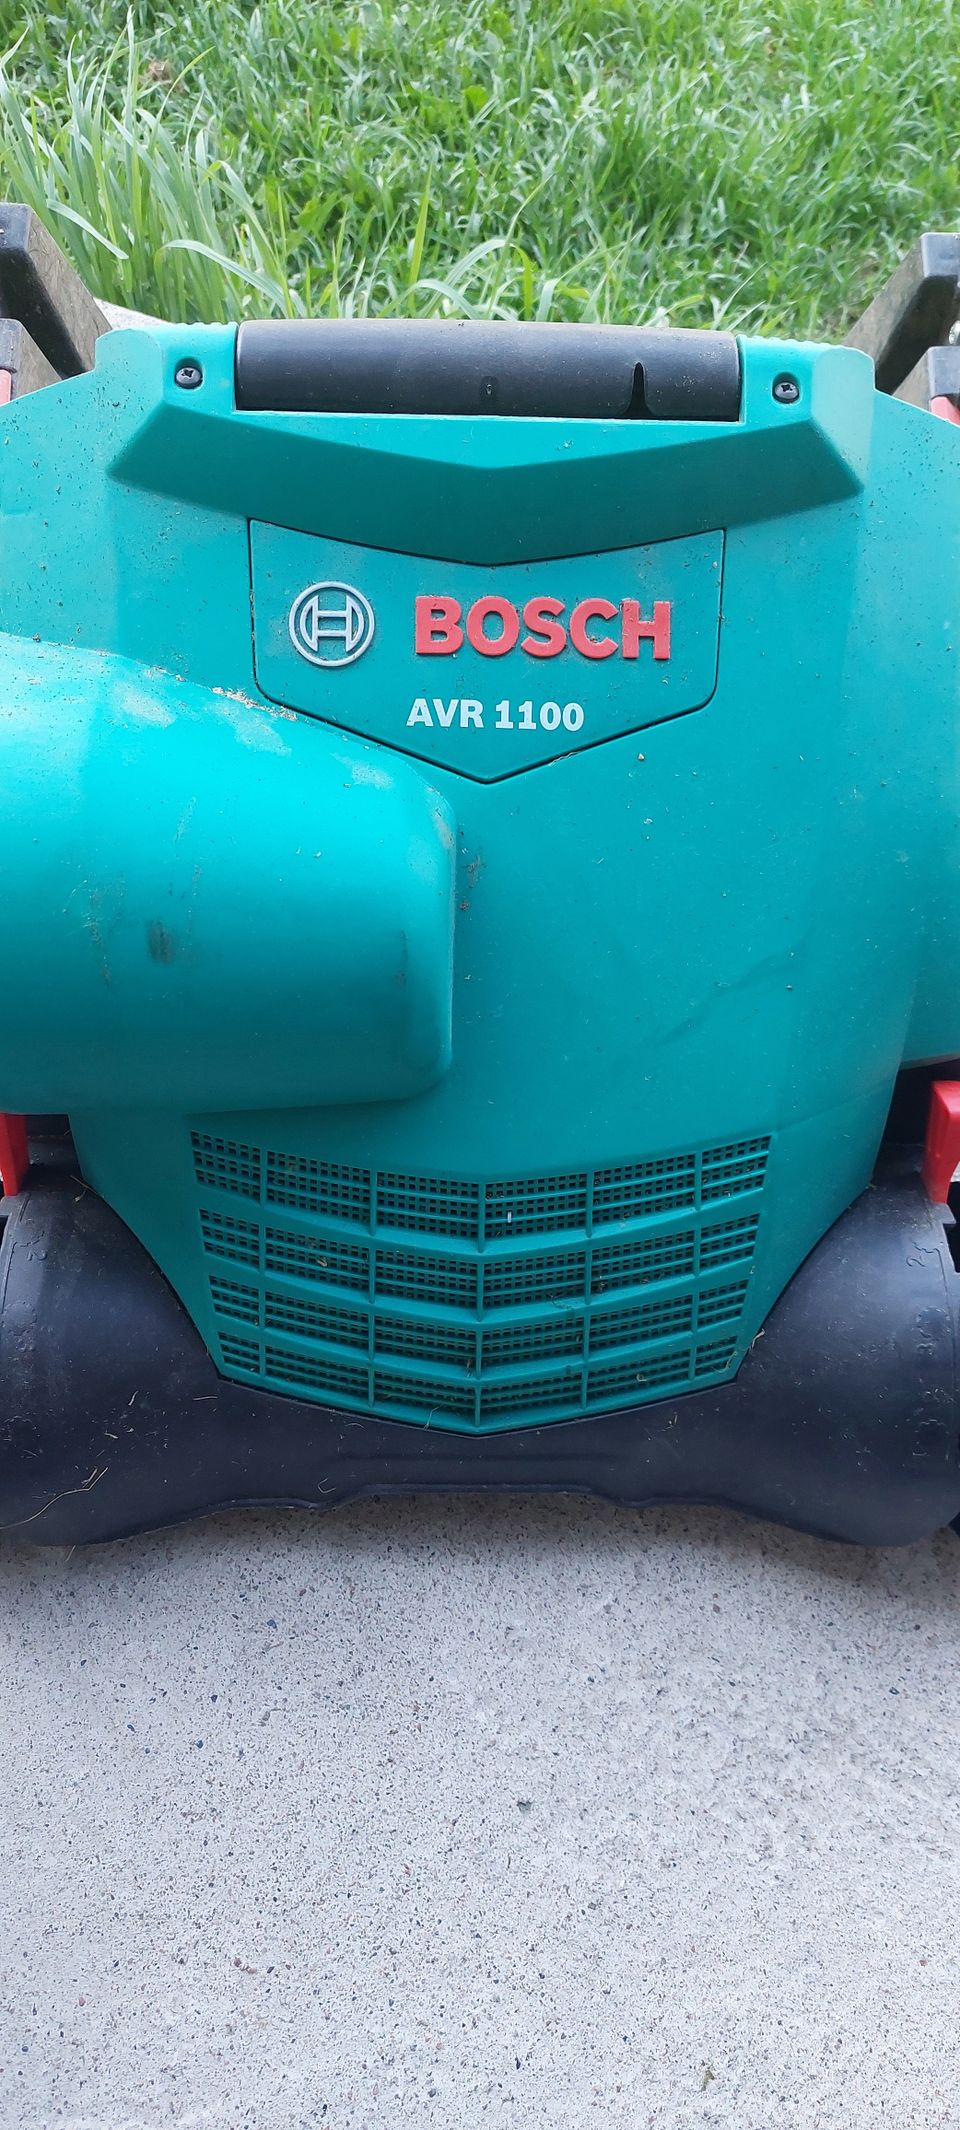 VUOKRATAAN Bosch AVR1100 nurmikonilmaaja